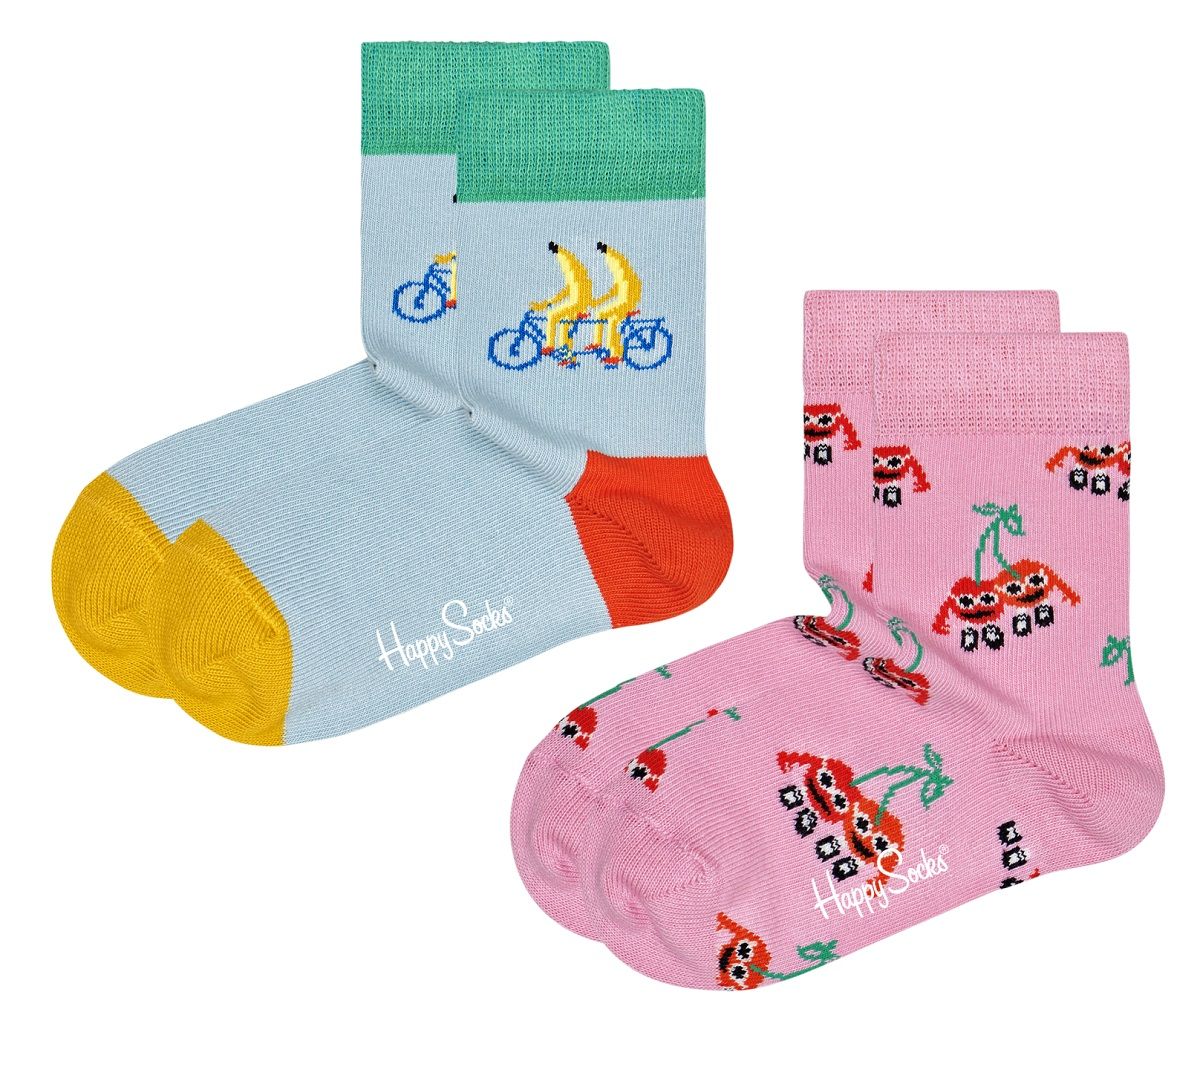 Набор из 2 пар детских носков 2-pack Kids Fruit Mates Socks Happy socks разноцветный 2-3Y